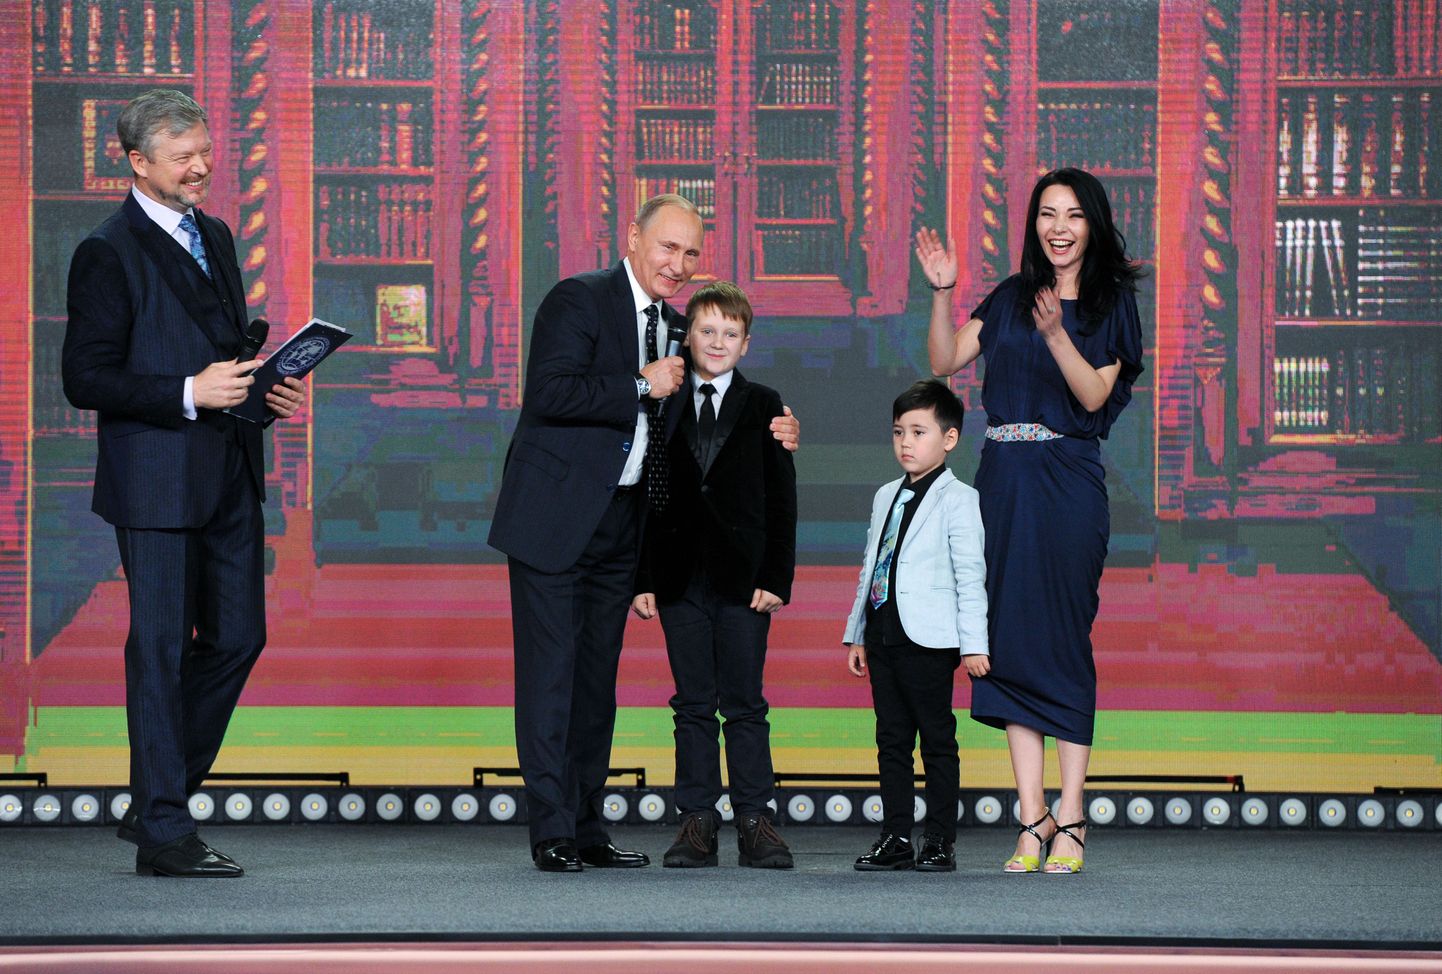 Vladimir Putin õpilaste geograafiaauhindade jagamisel